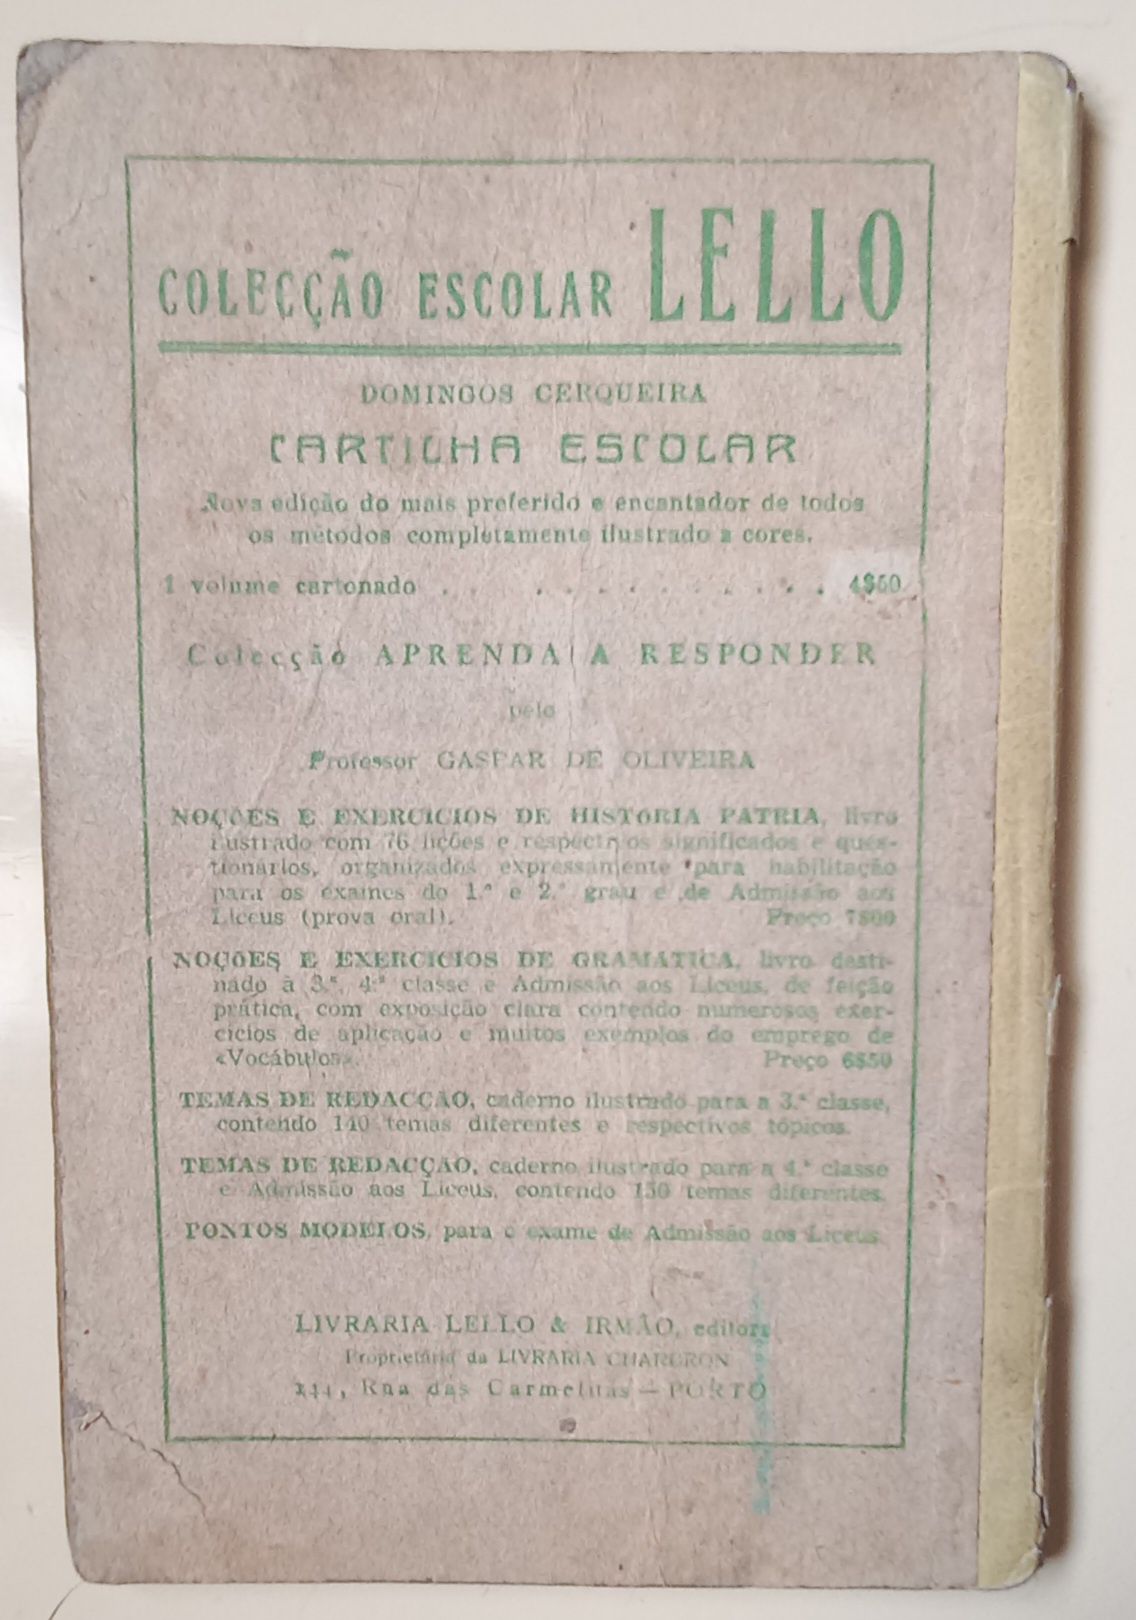 Cartilha escolar da Lello, de 1912. PORTES GRÁTIS.